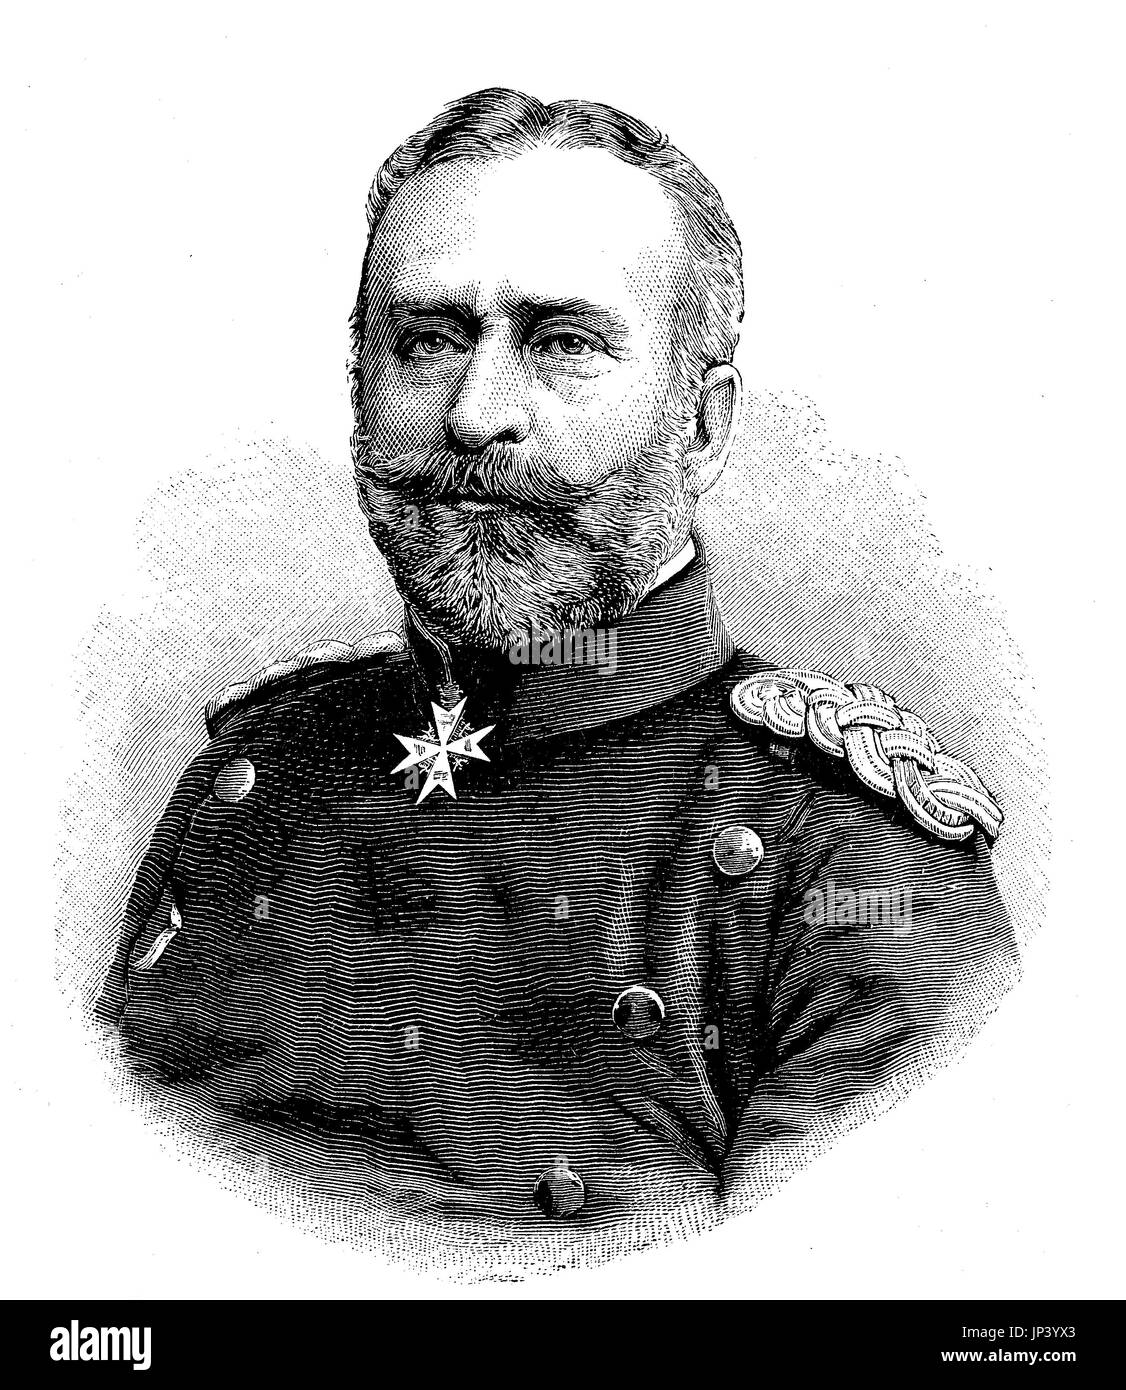 Ernst Engelbert Oskar Wilhelm von der Burg, war 24. April 1831 - 3. November 1910, ein preußischer General der Infanterie, Deutschland, digital verbesserte Reproduktion einer Holzschnitt-Publikation aus dem Jahr 1888 Stockfoto